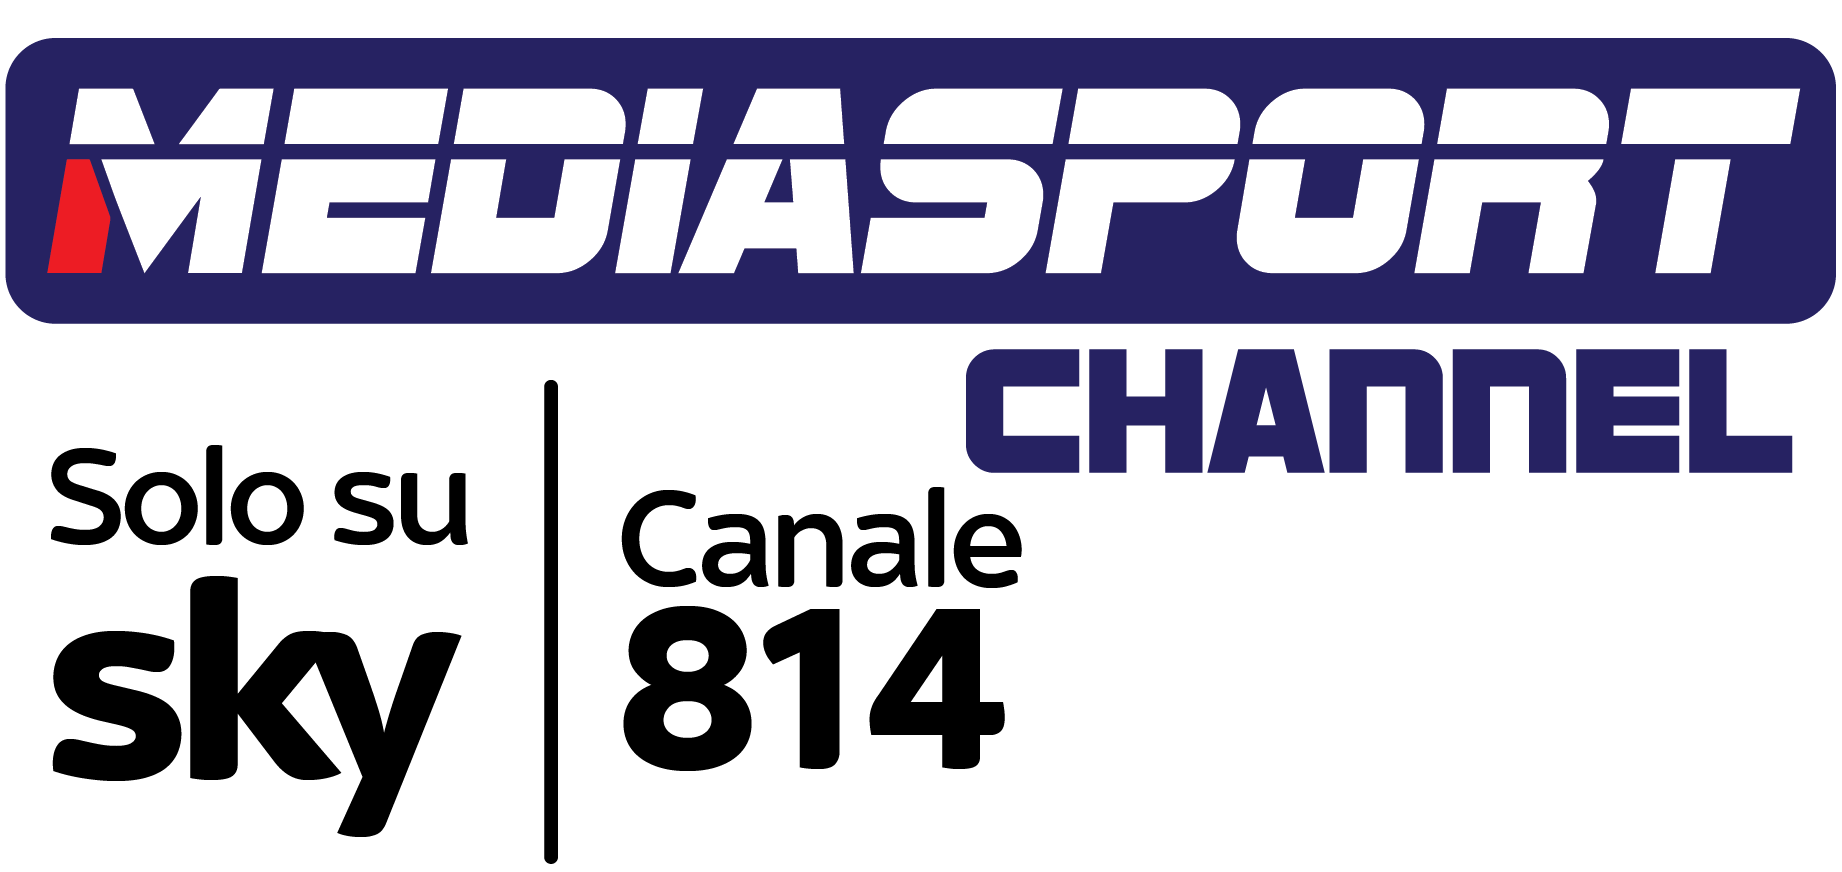 Mediasport logo v2